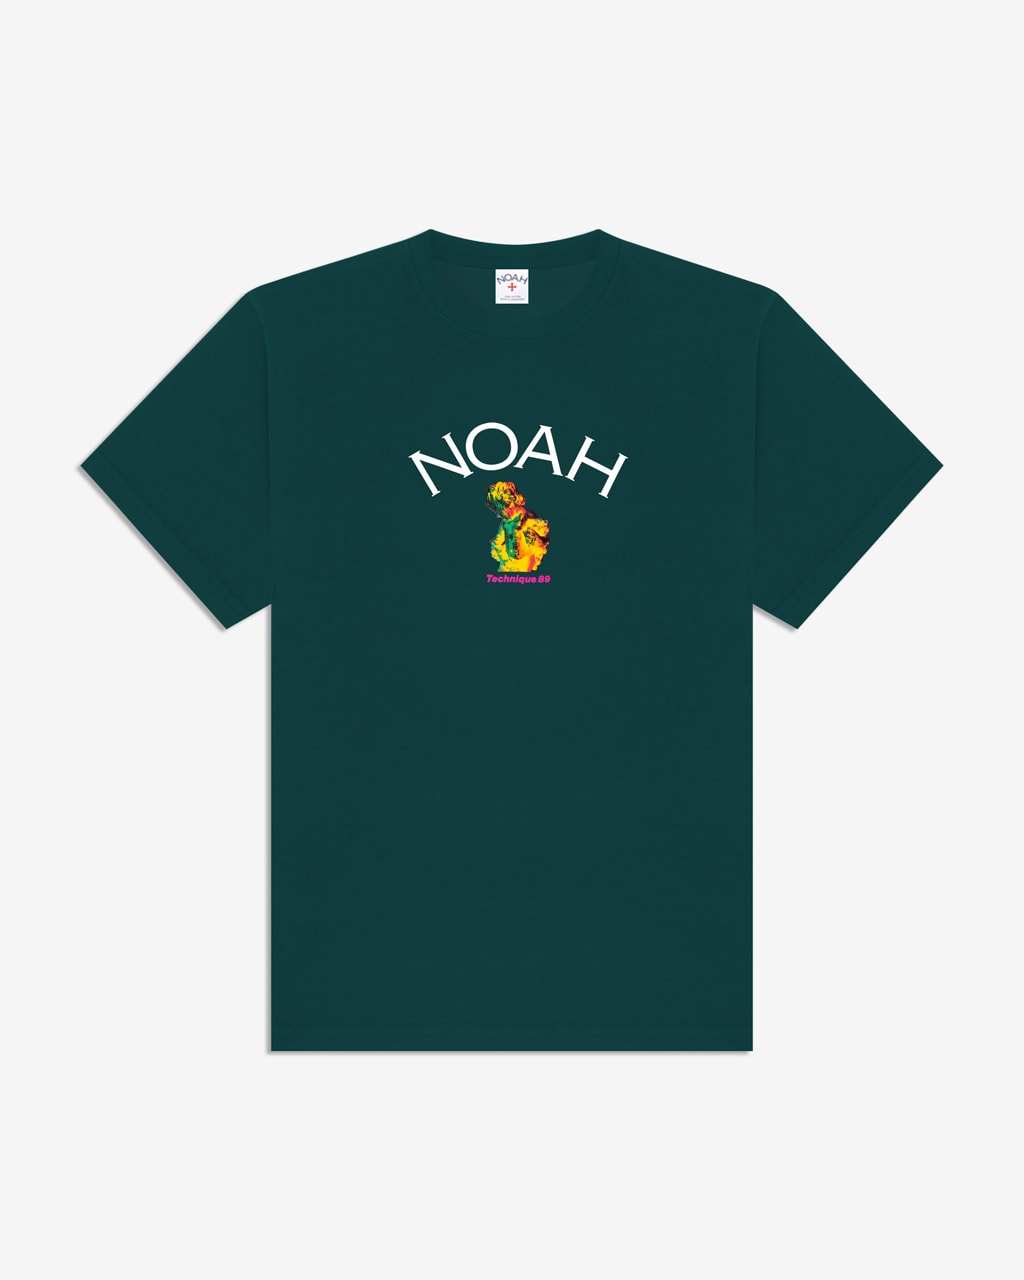 ノア ニューオーダー NOAH が伝説のバンド New Order とのコラボコレクションを発表